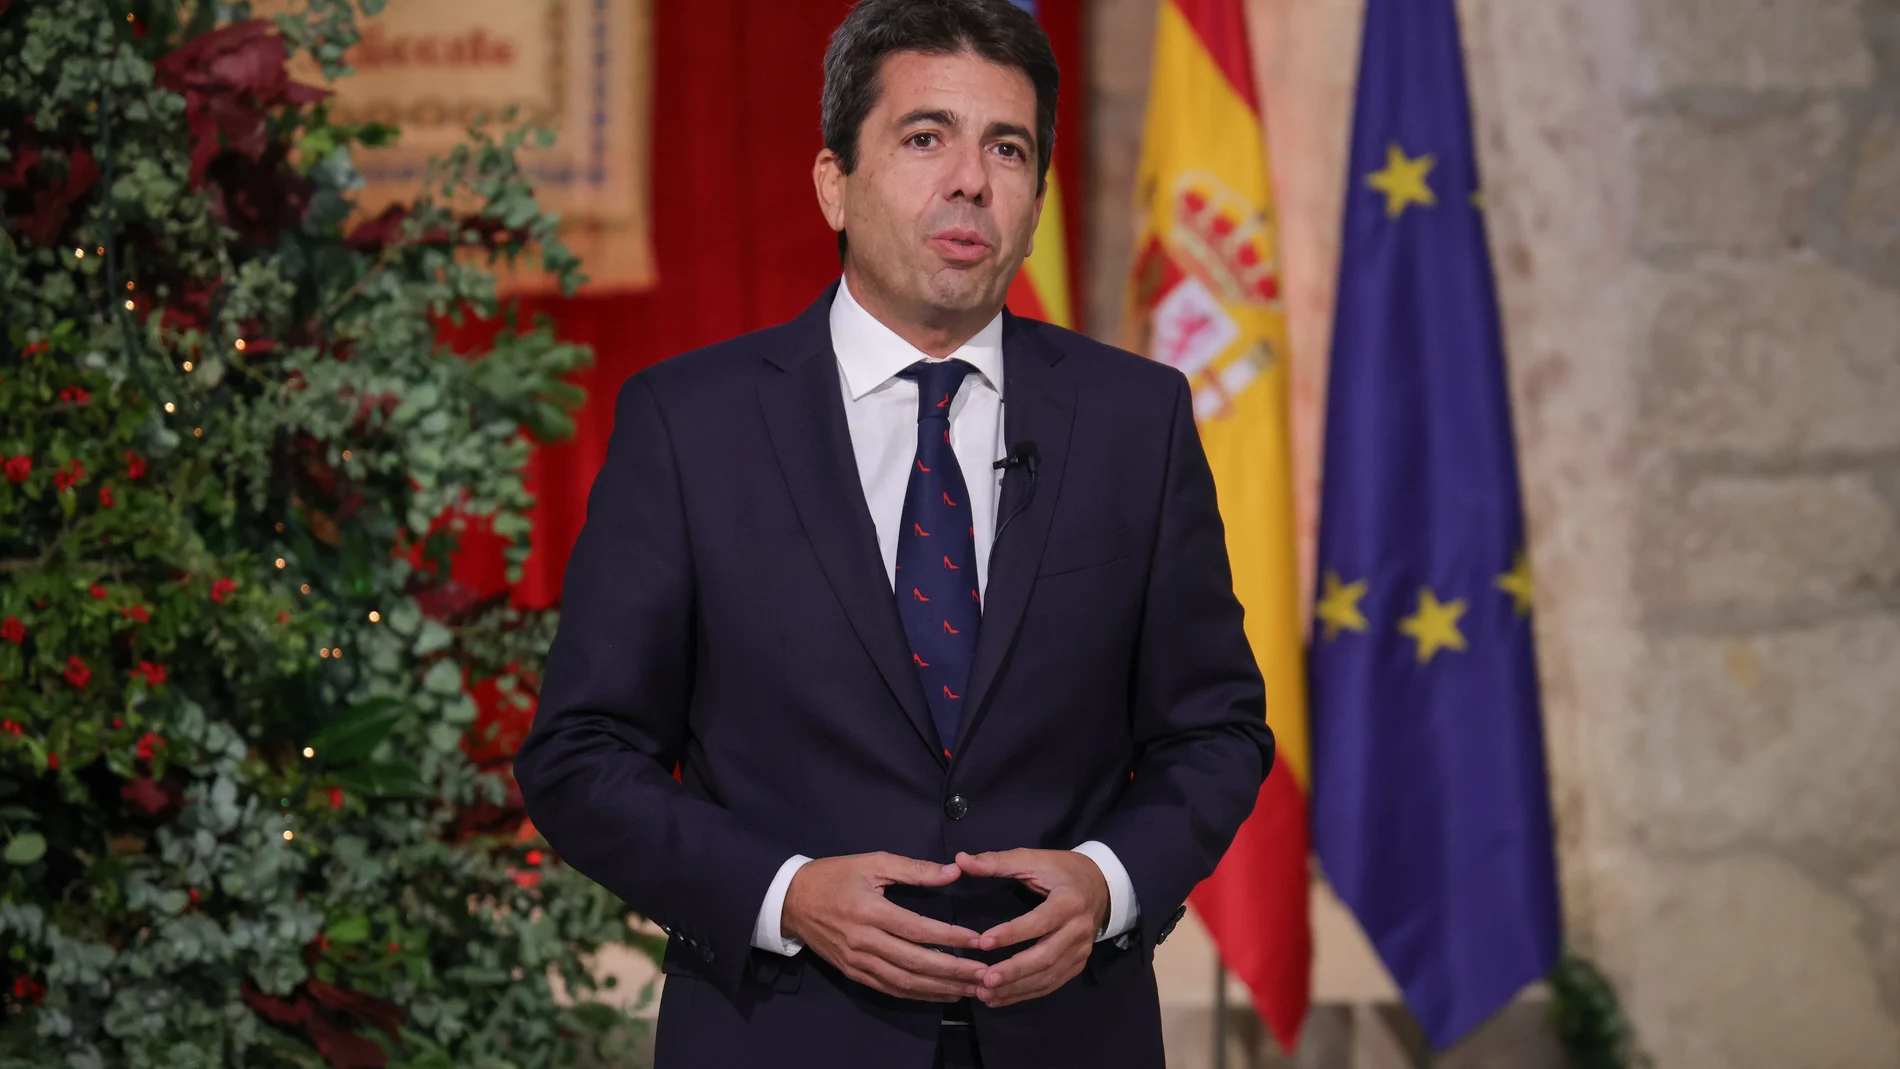 El presidente de la Generalitat, Carlos Mazón, durante el discurso pronunciado en el Castillo de Santa Bárbara (Alicante)